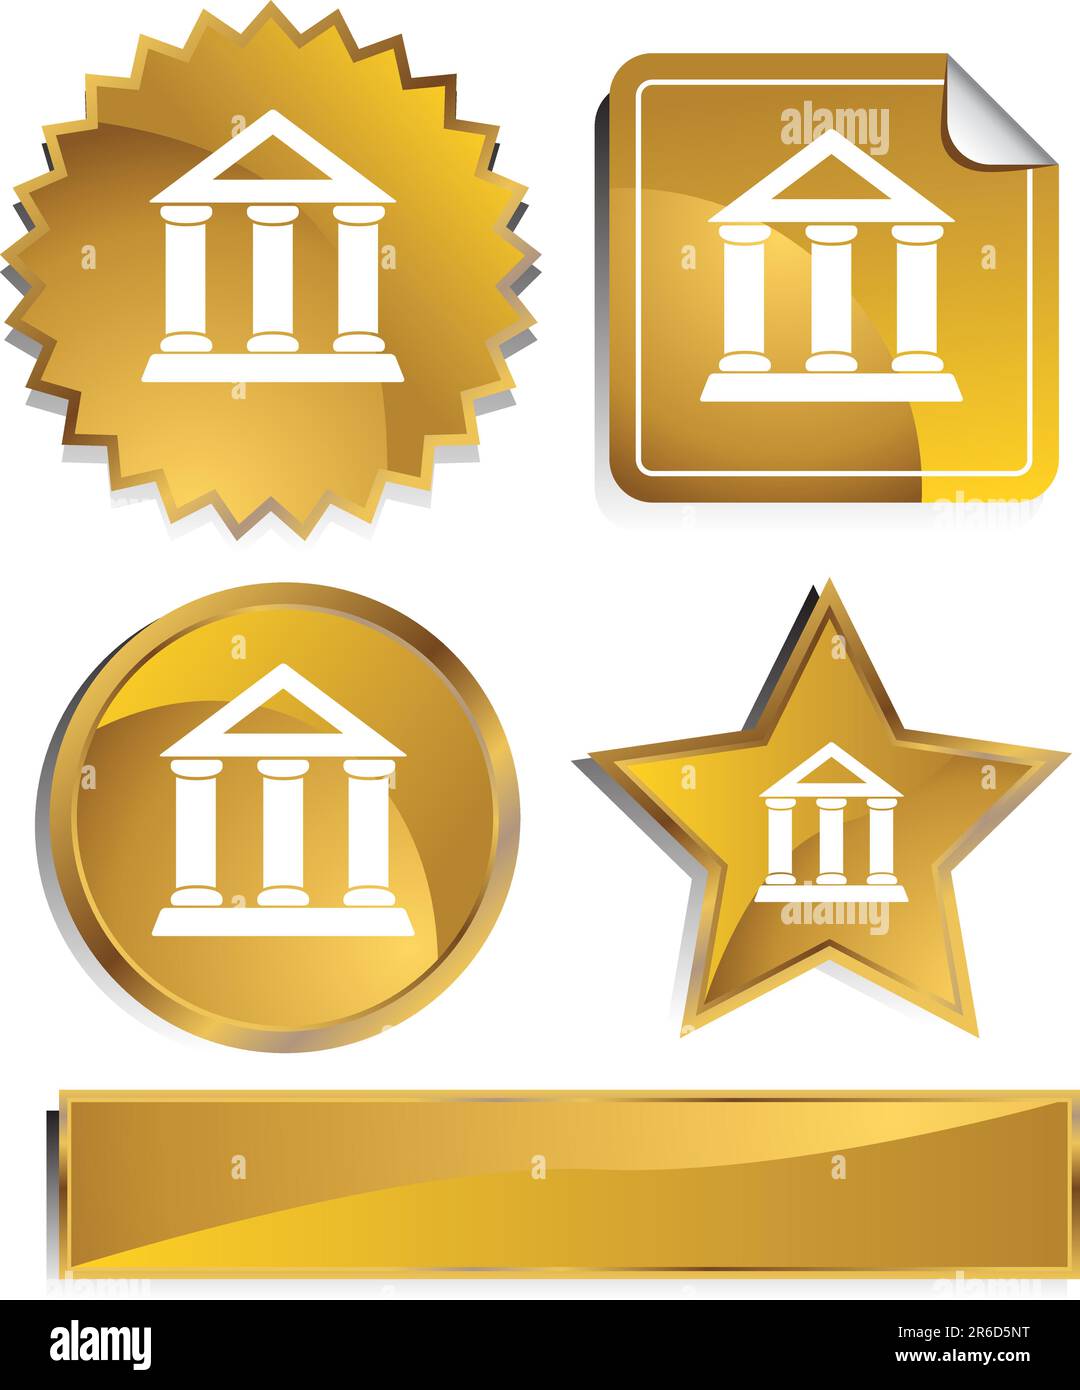 Reihe von 3D gold Chrome Icons - Regierungsgebäude. Stock Vektor